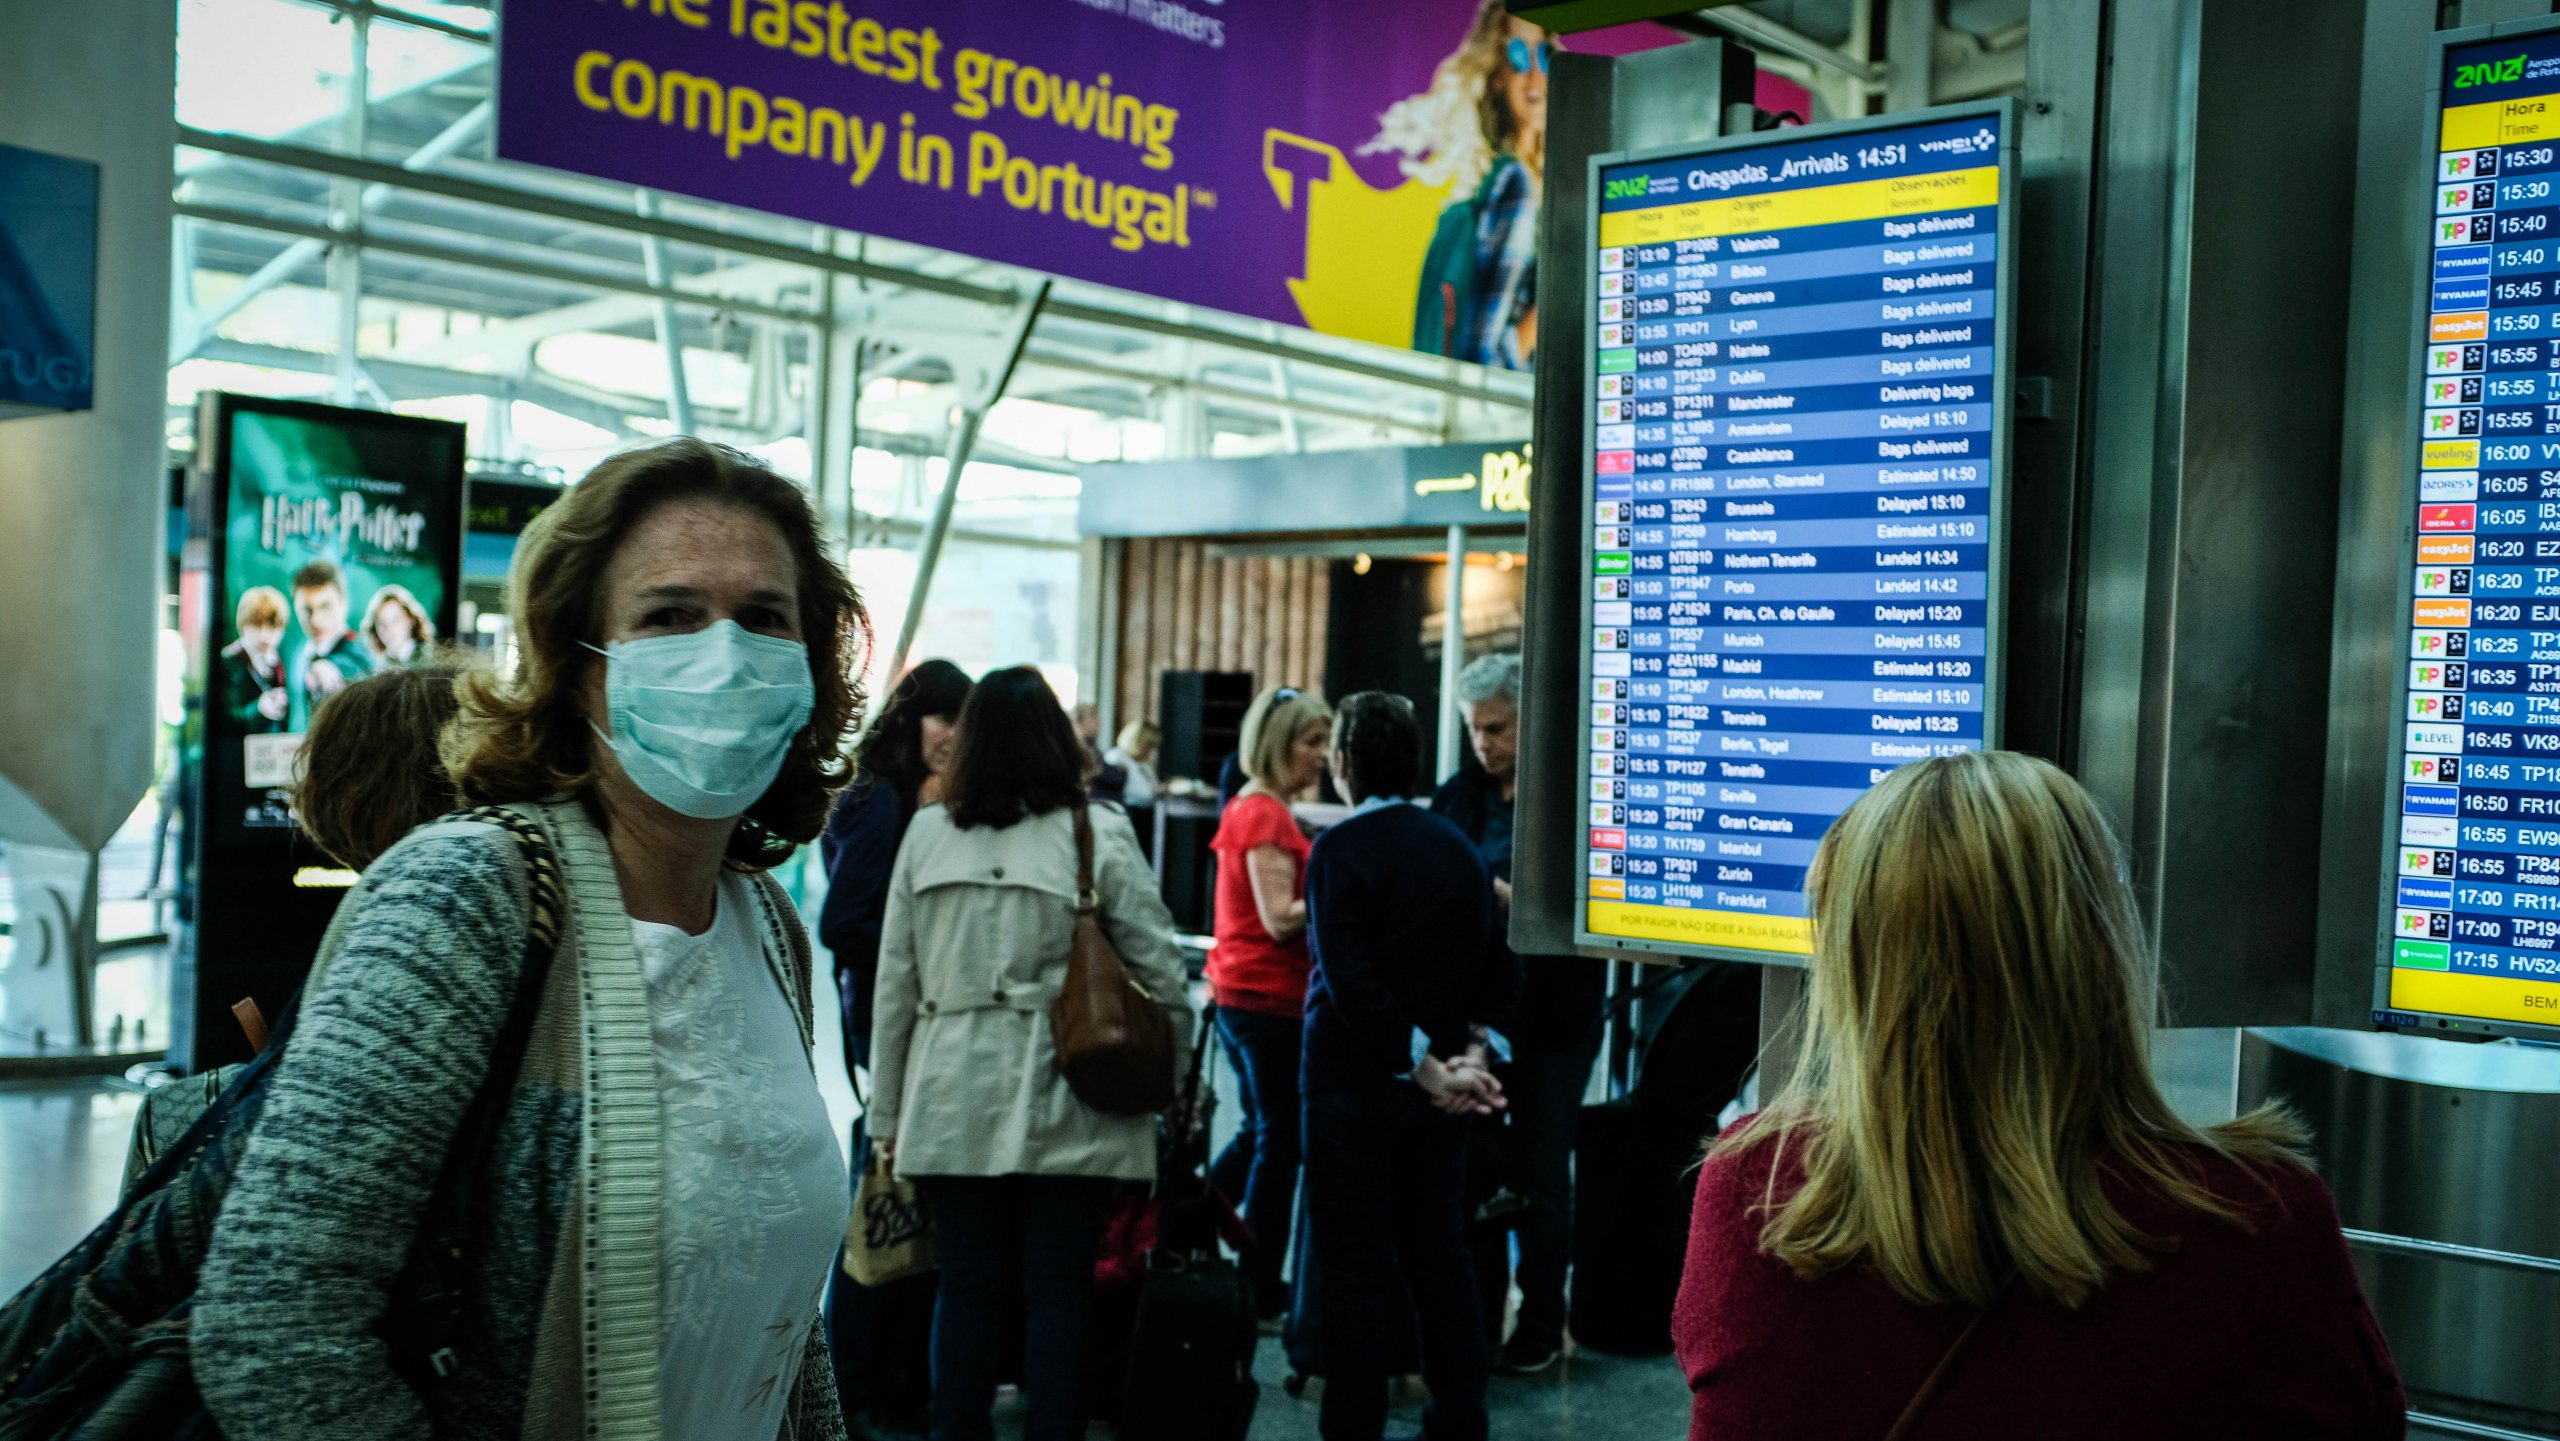 Controlo de teste negativo nas chegadas aos aeroportos passará a ser sistemático